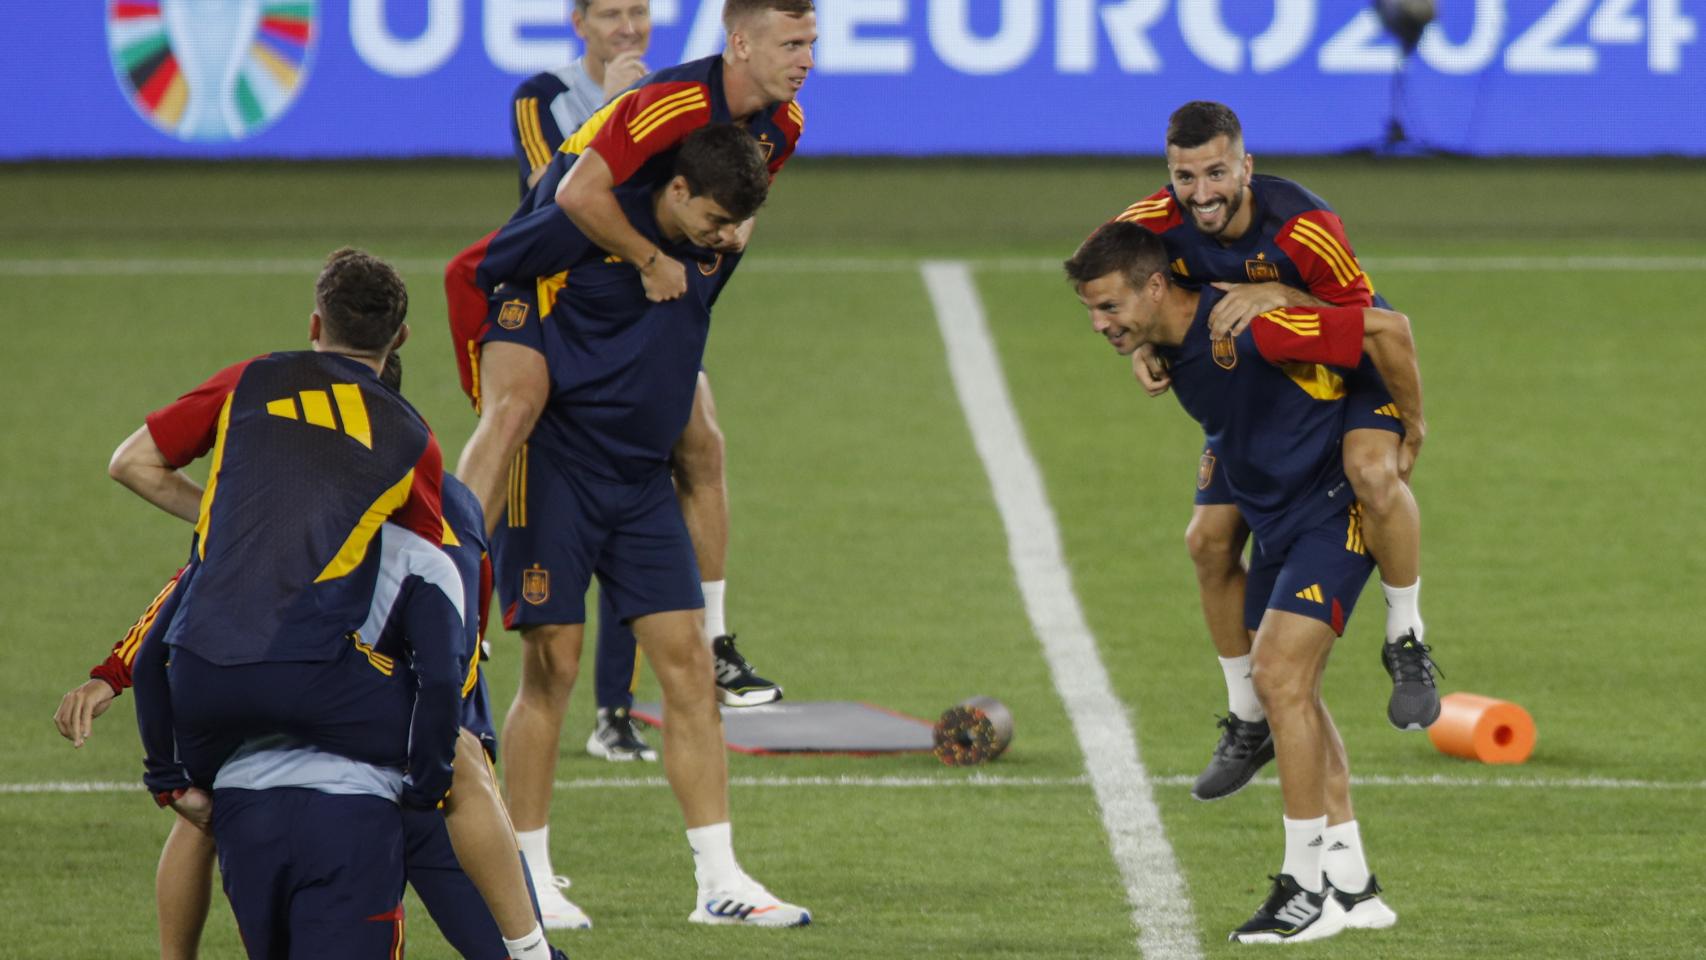 Los jugadores de la selección española durante el entrenamiento antes de jugar contra Georgia.